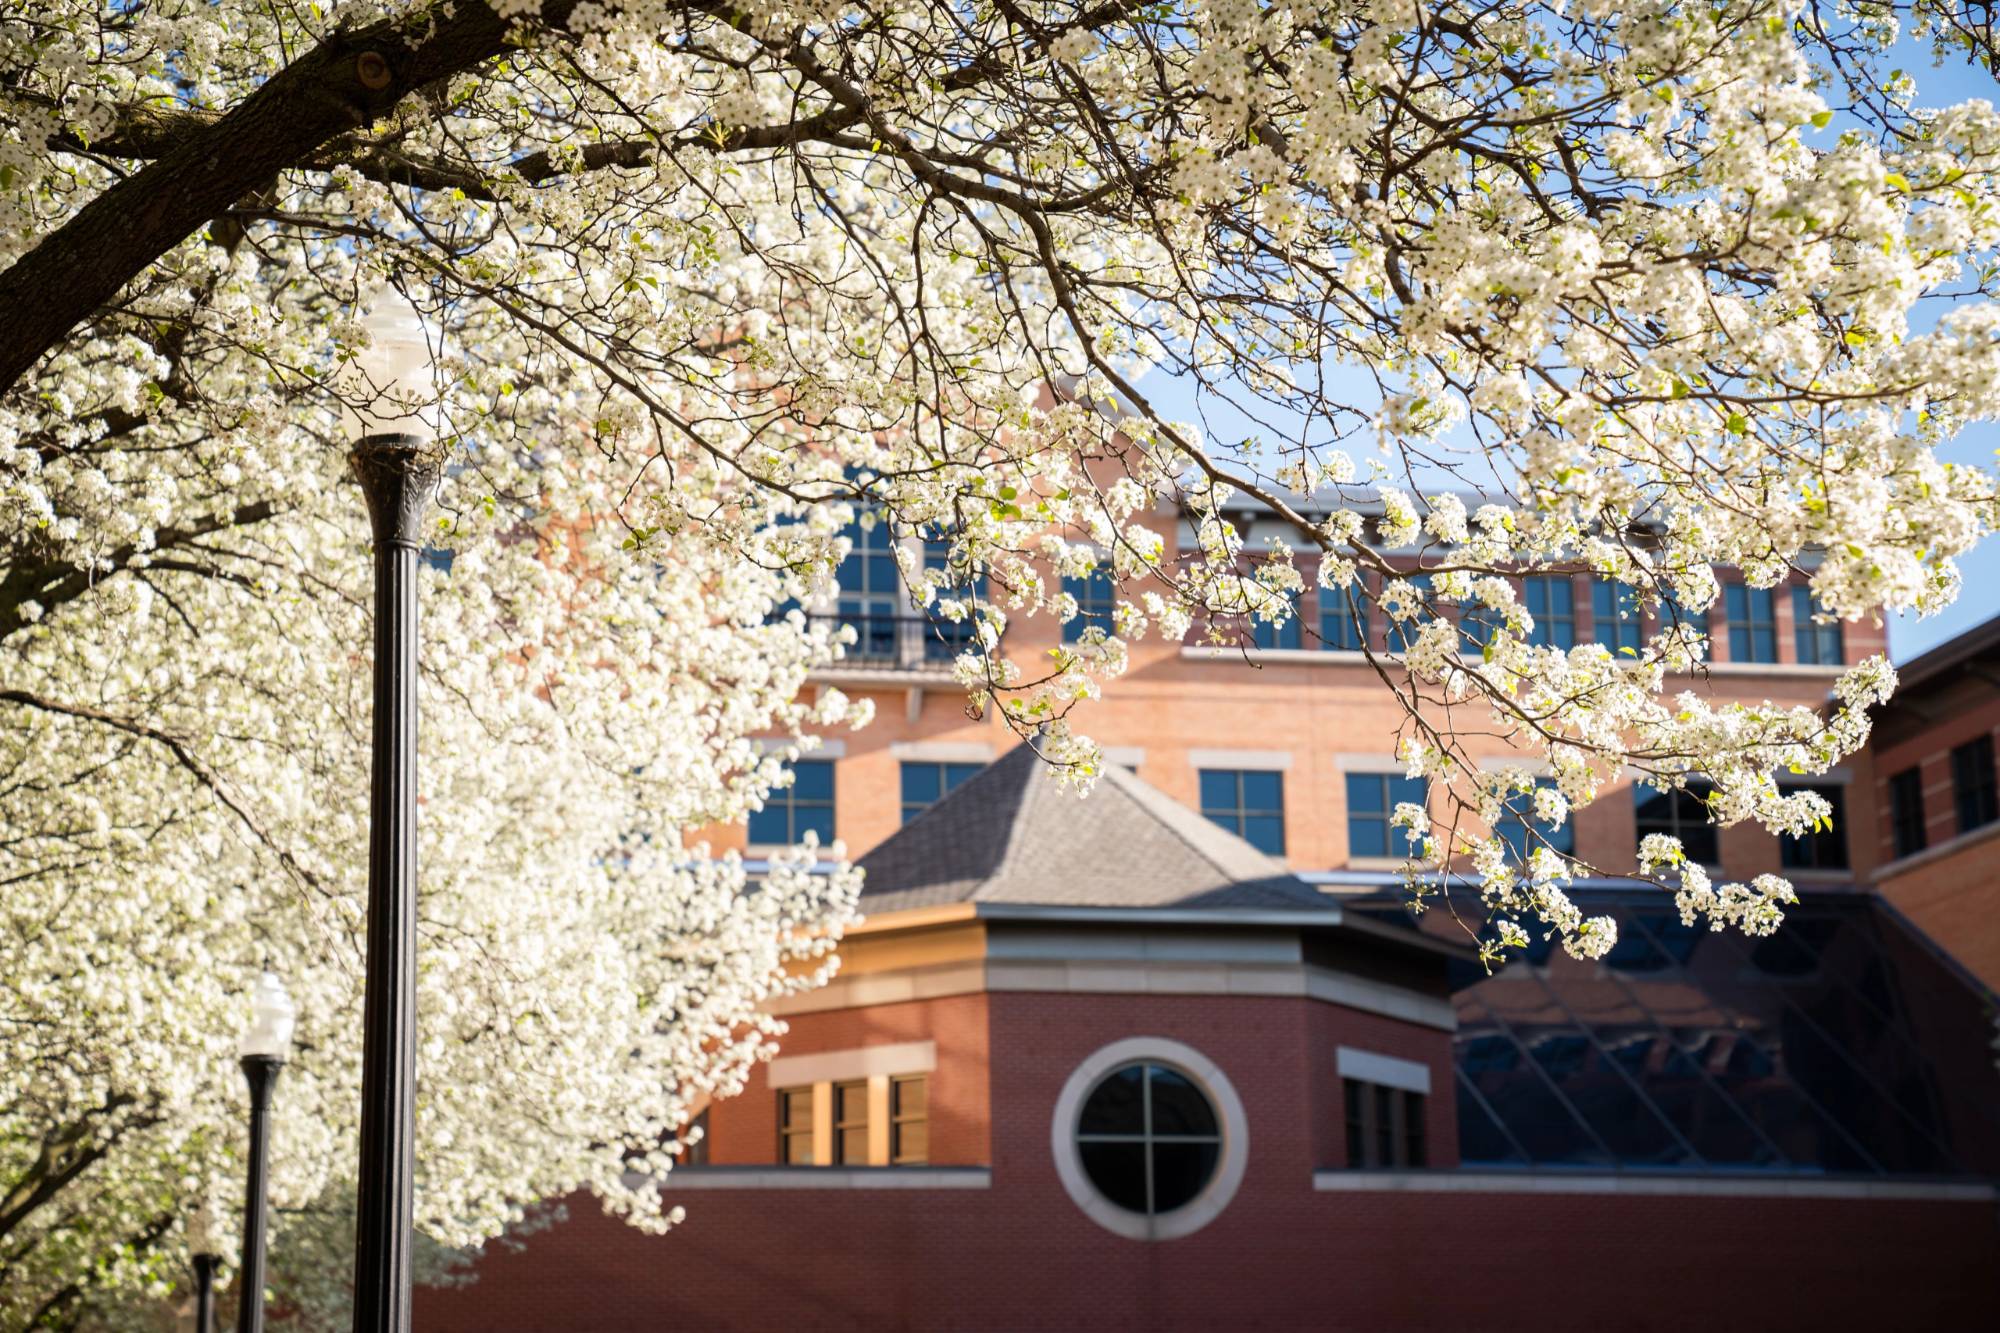 photo of devos campus behind flowering tree